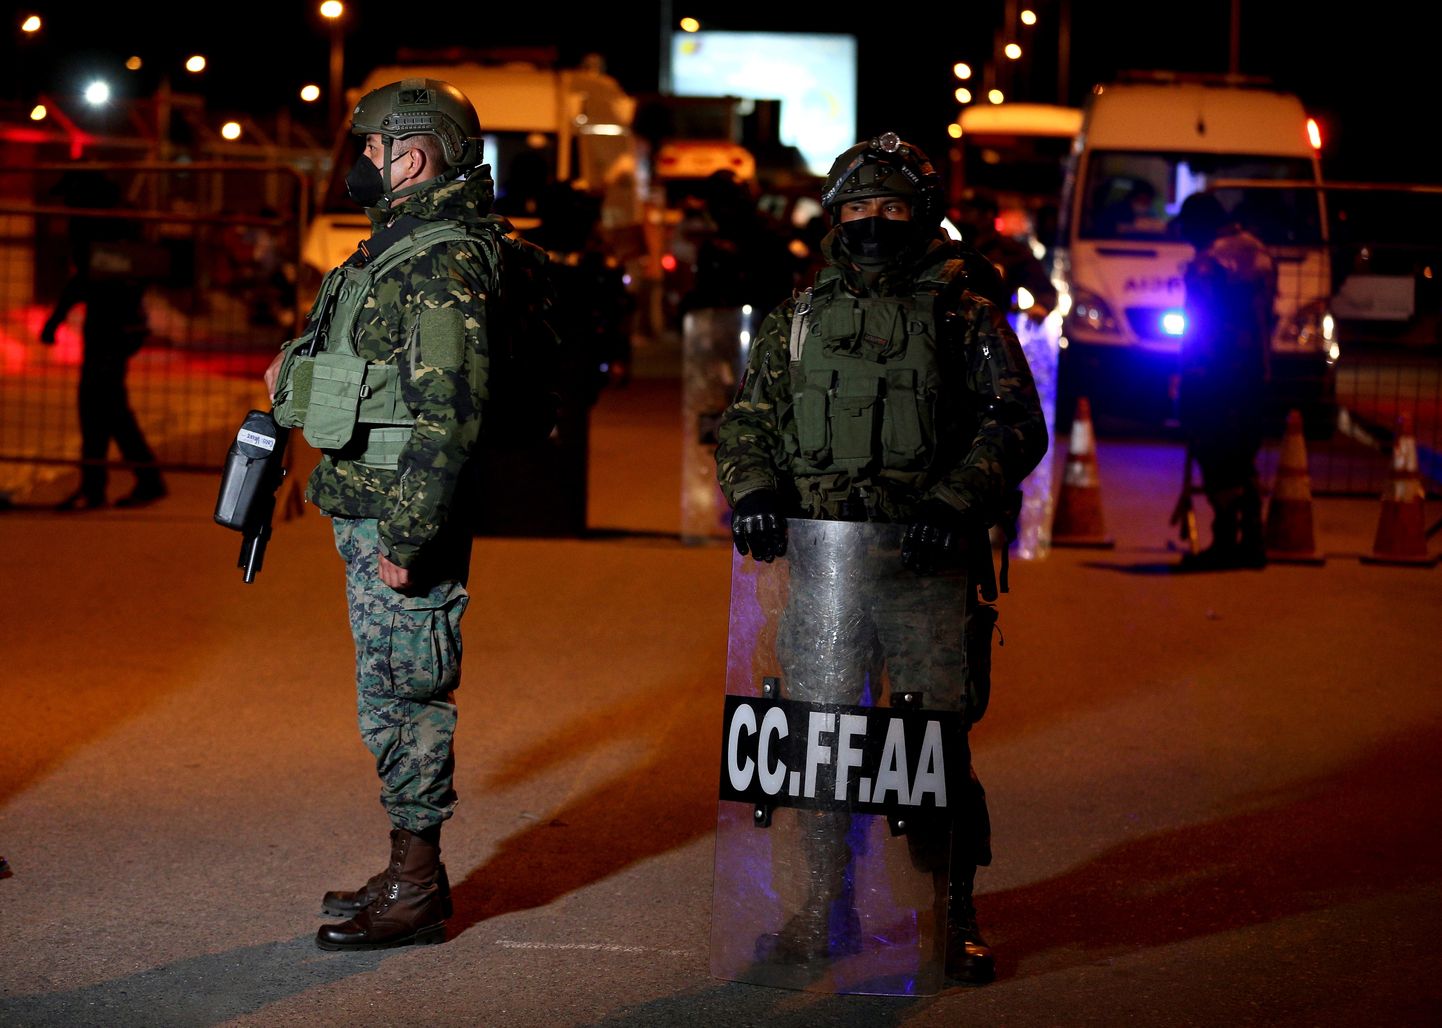 Ecuadori sõdurid valvamas vanglat pärast ohvreid nõudnud rahutusi.